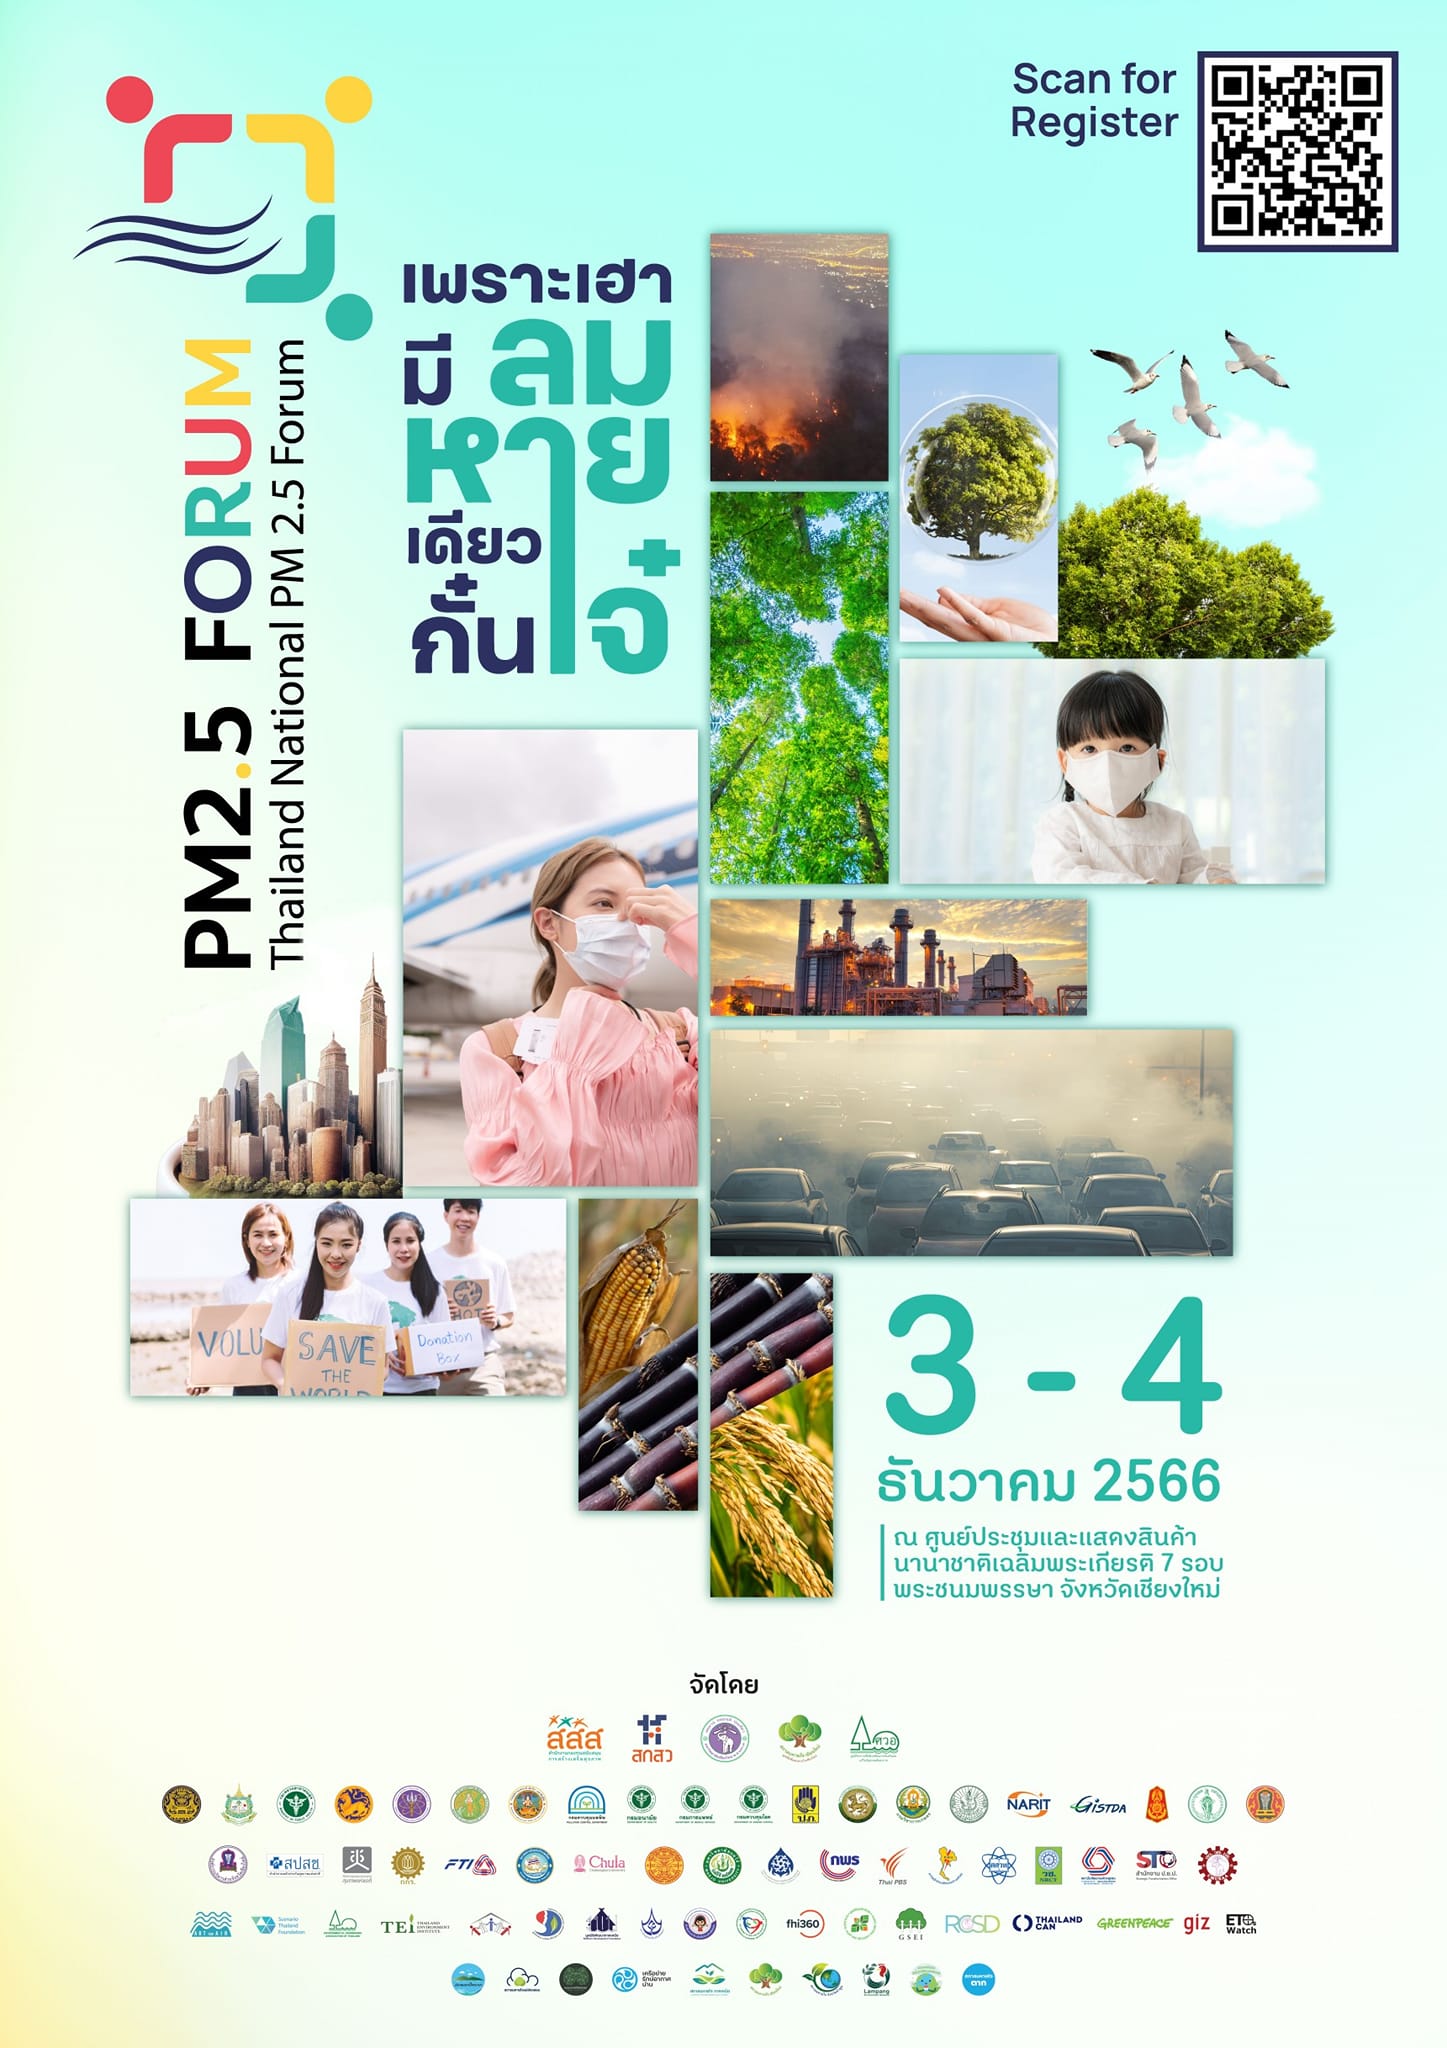 ประชุมระดับชาติ เรื่อง มลพิษทางอากาศ PM2.5 ครั้งที่ 1 (Thailand National PM 2.5 Forum)